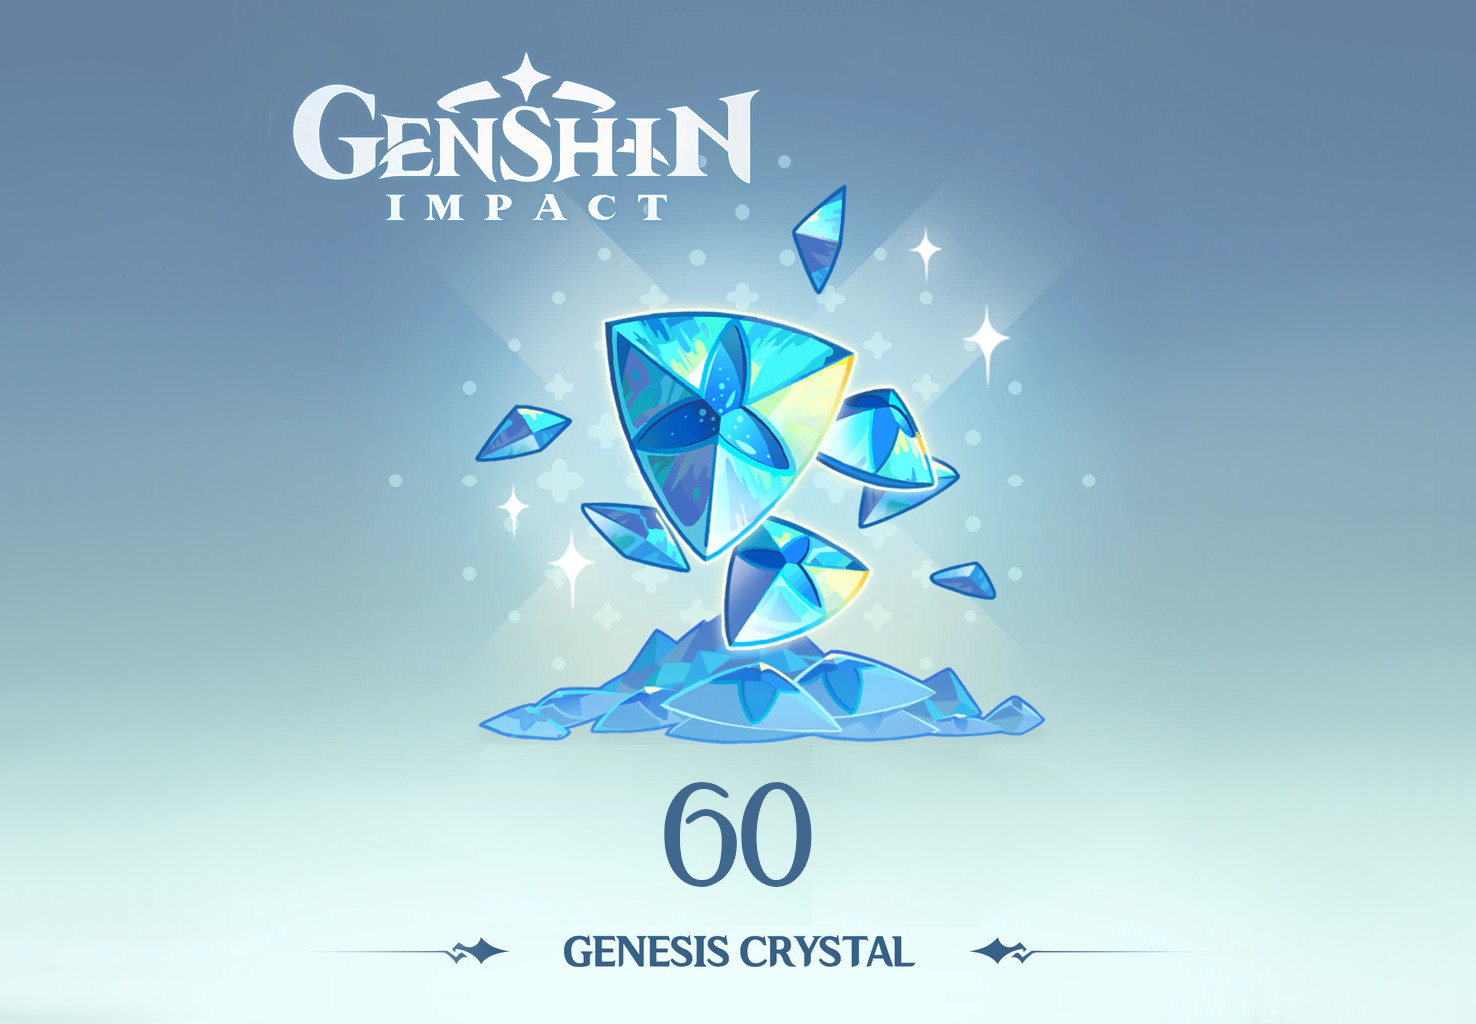 Genshin Impact - 60 Genesis Crystals Reidos Voucher $1.32